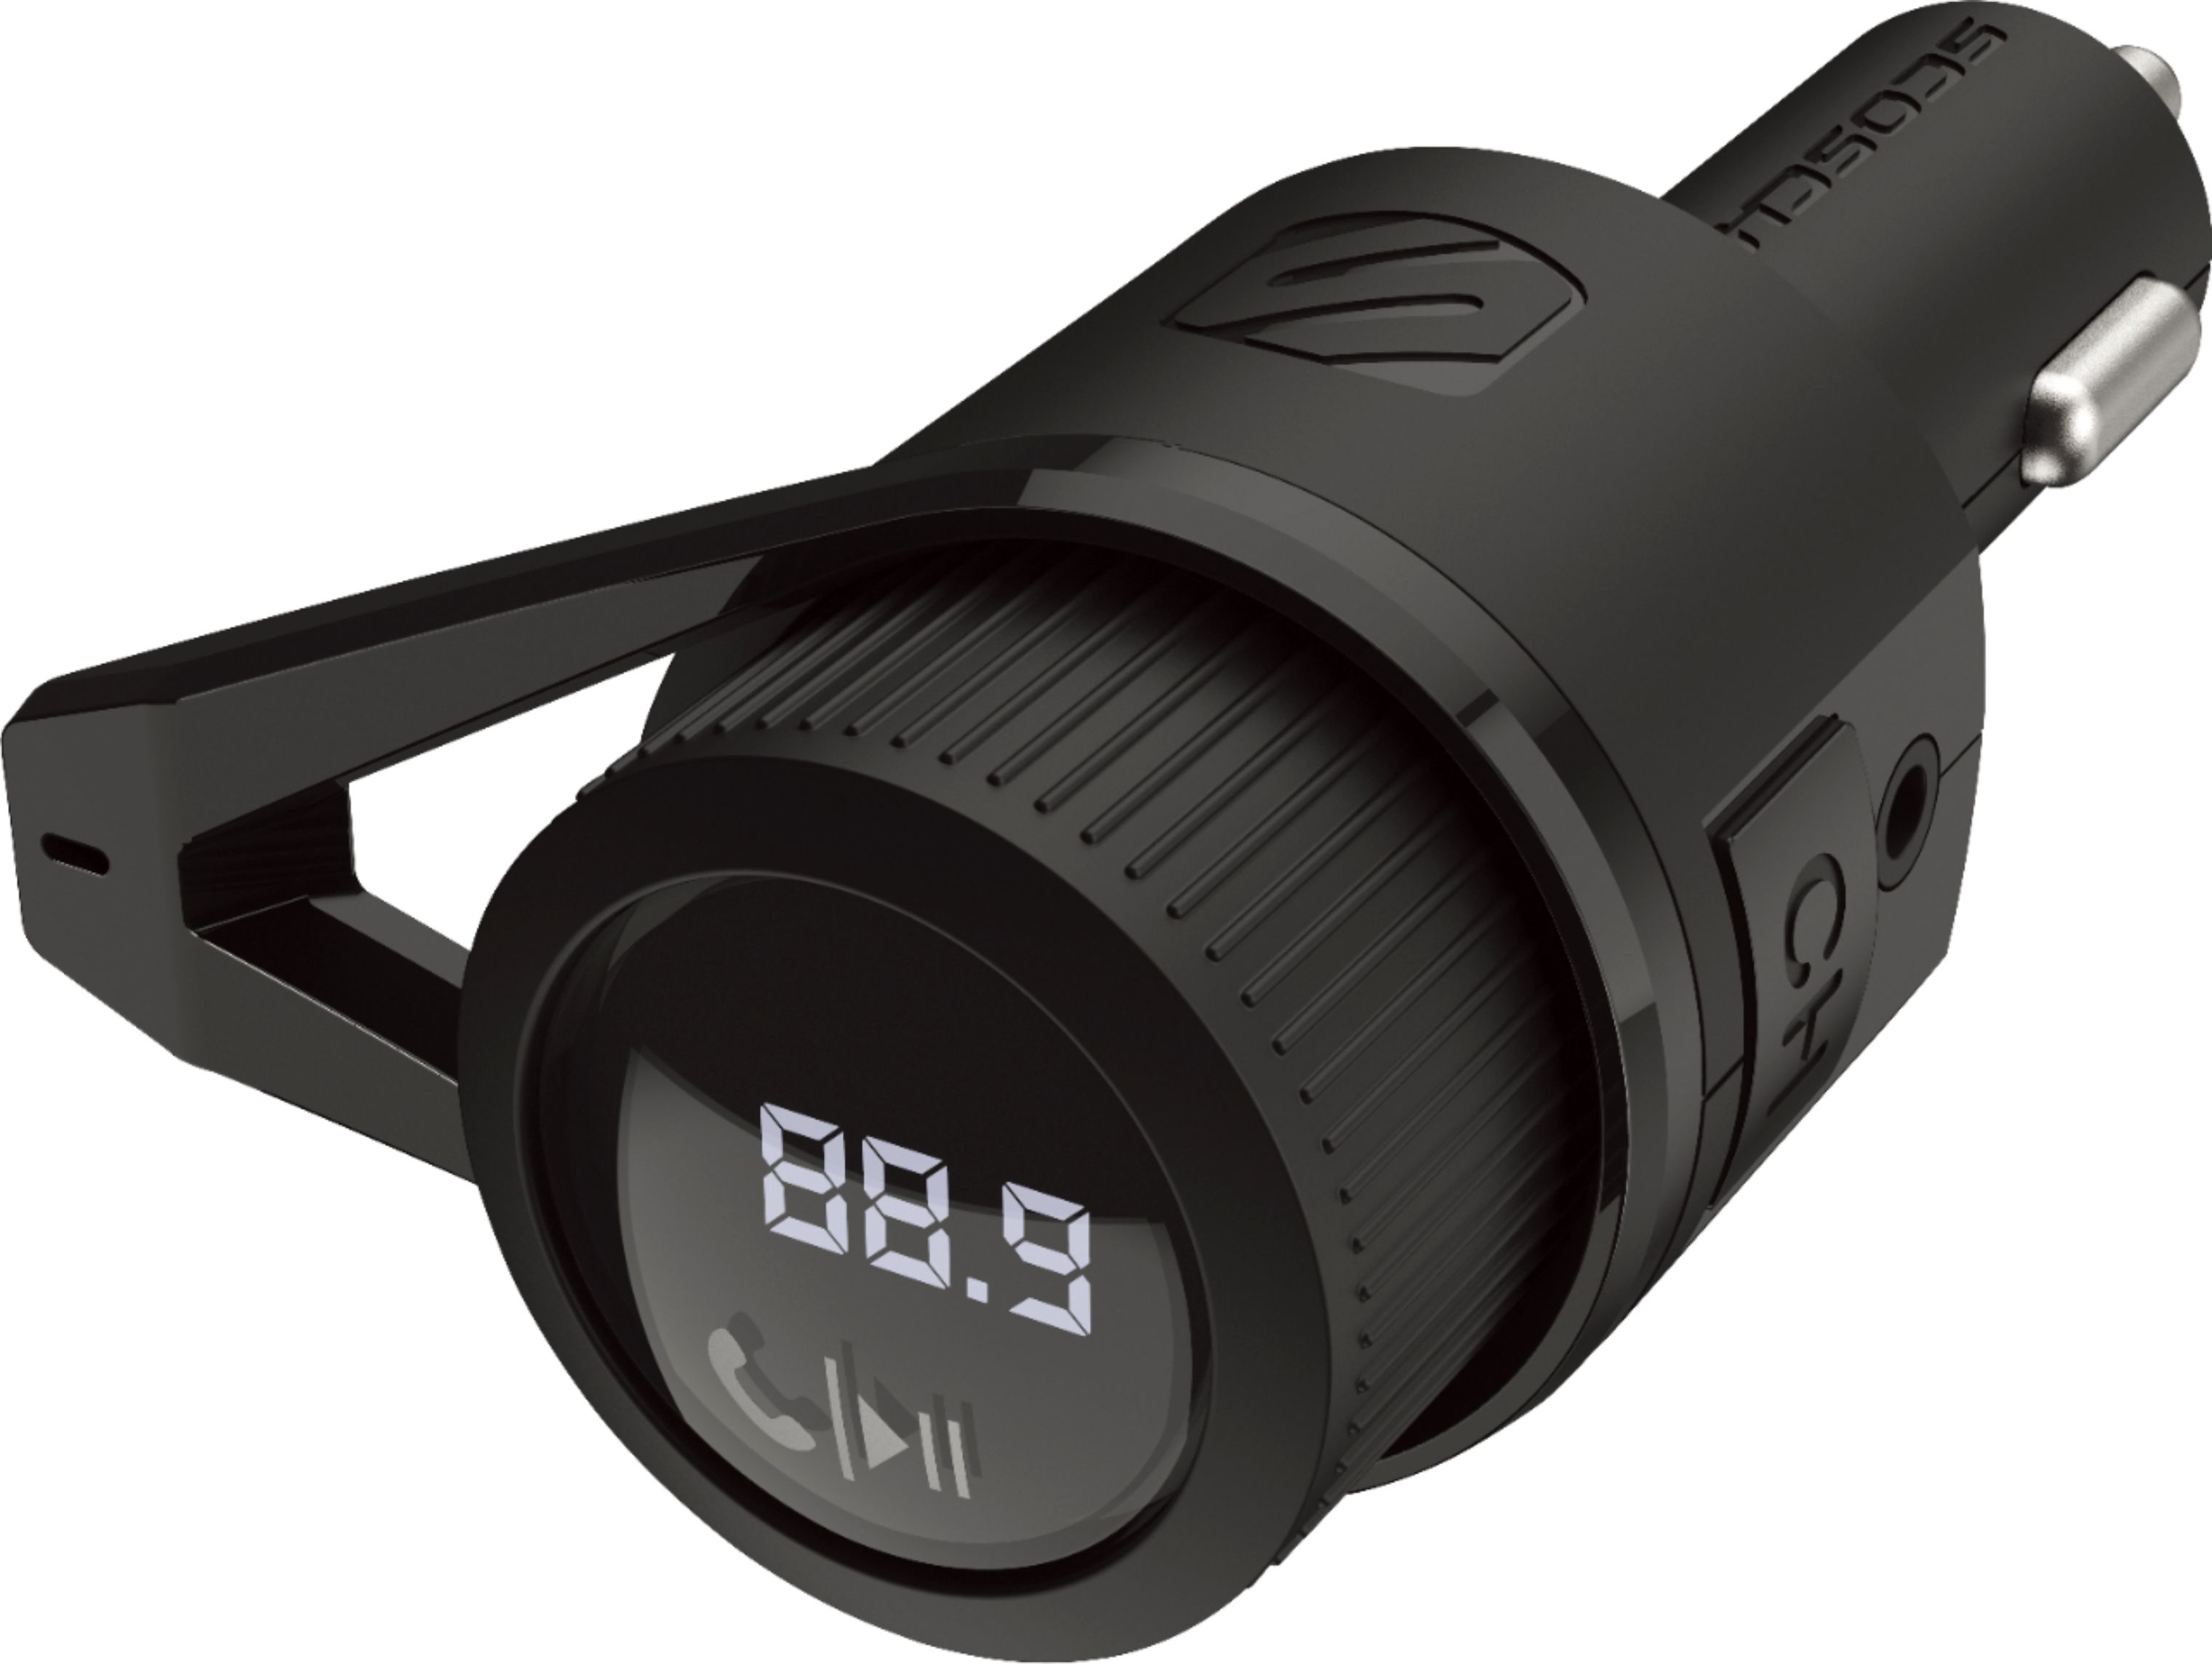  Scosche BTFM5 - Kit de coche manos libres Bluetooth con  transmisor FM digital y puertos de carga USB duales de 12 W para vehículos  : Electrónica